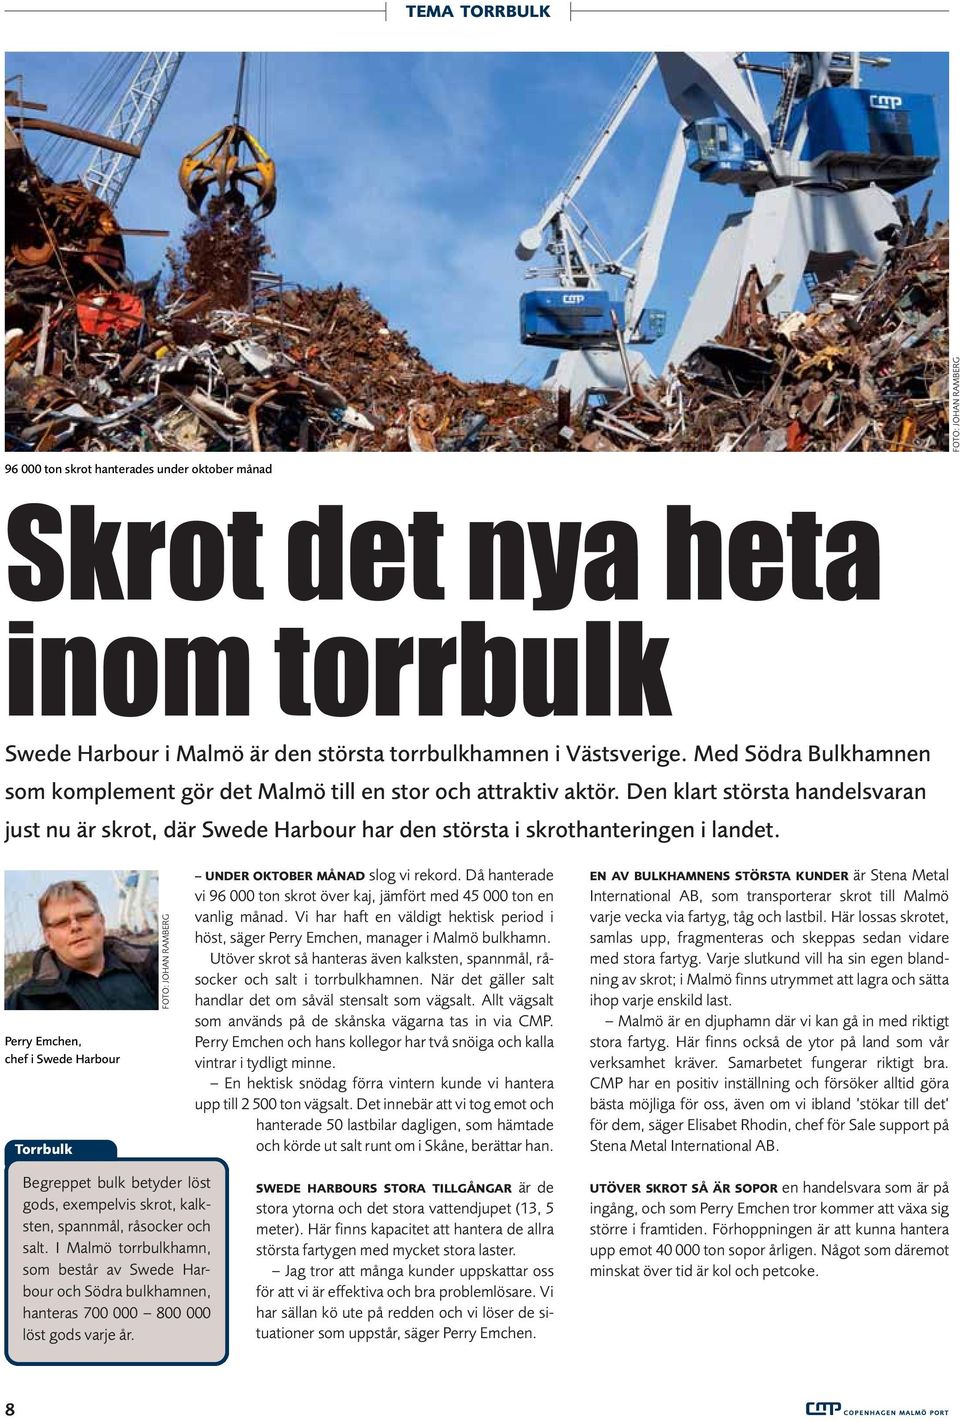 Perry Emchen, chef i Swede Harbour Torrbulk FOTO: JOHAN RAMBERG UNDER OKTOBER MÅNAD slog vi rekord. Då hanterade vi 96 000 ton skrot över kaj, jämfört med 45 000 ton en vanlig månad.